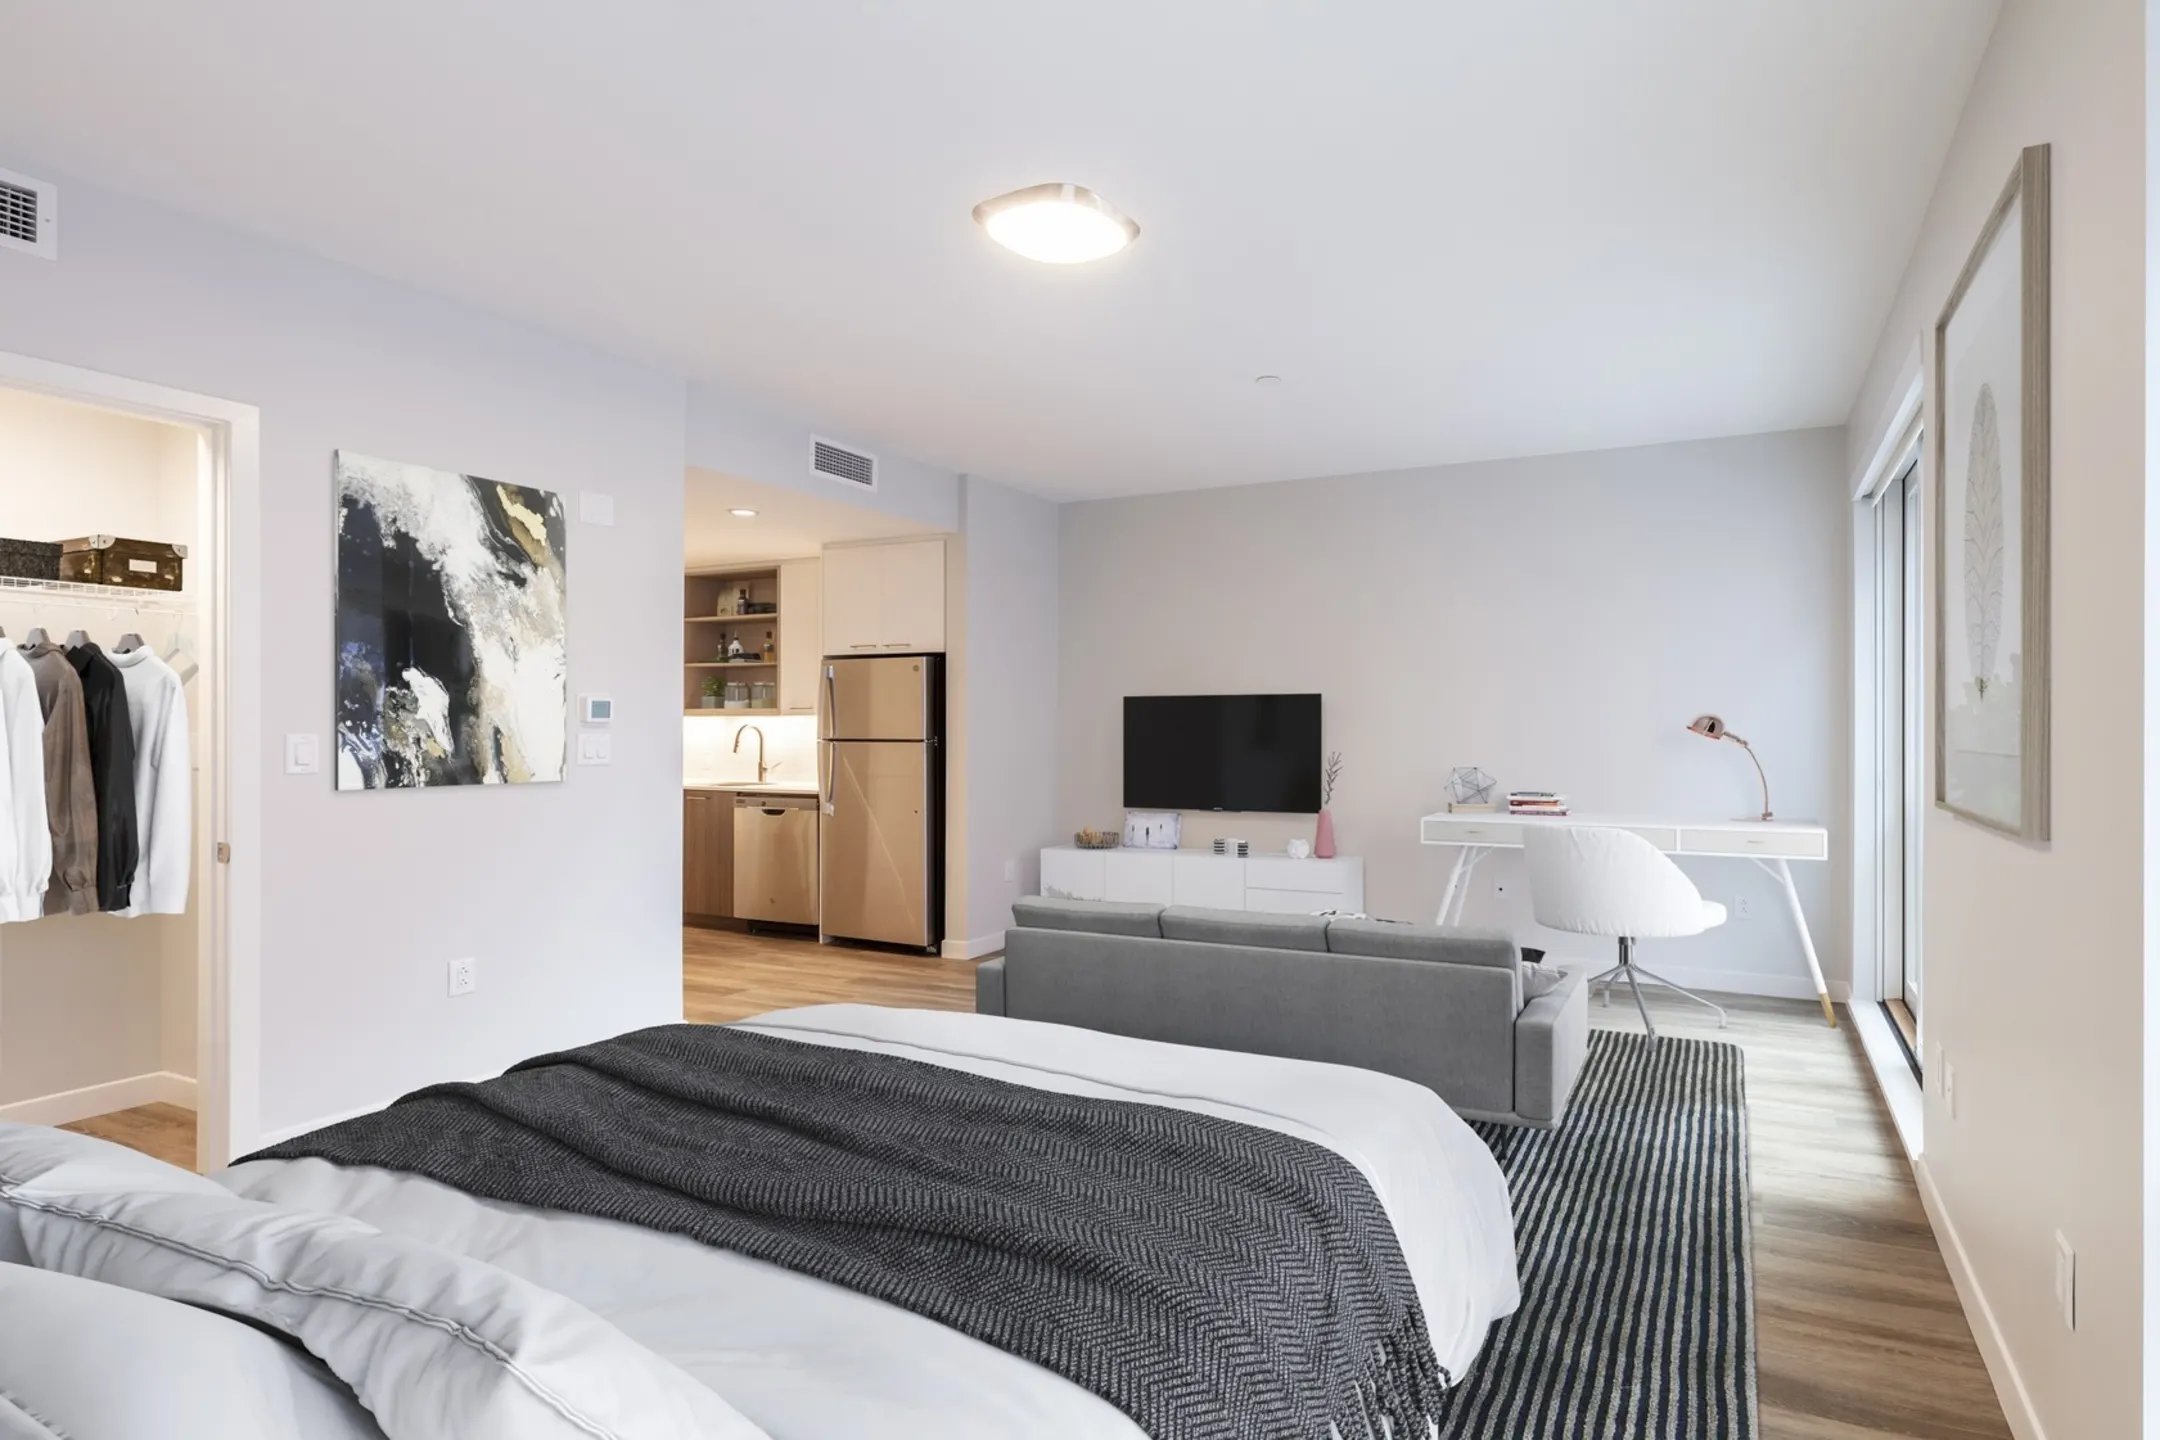 Bedroom - Prism Apartments - Cambridge, MA